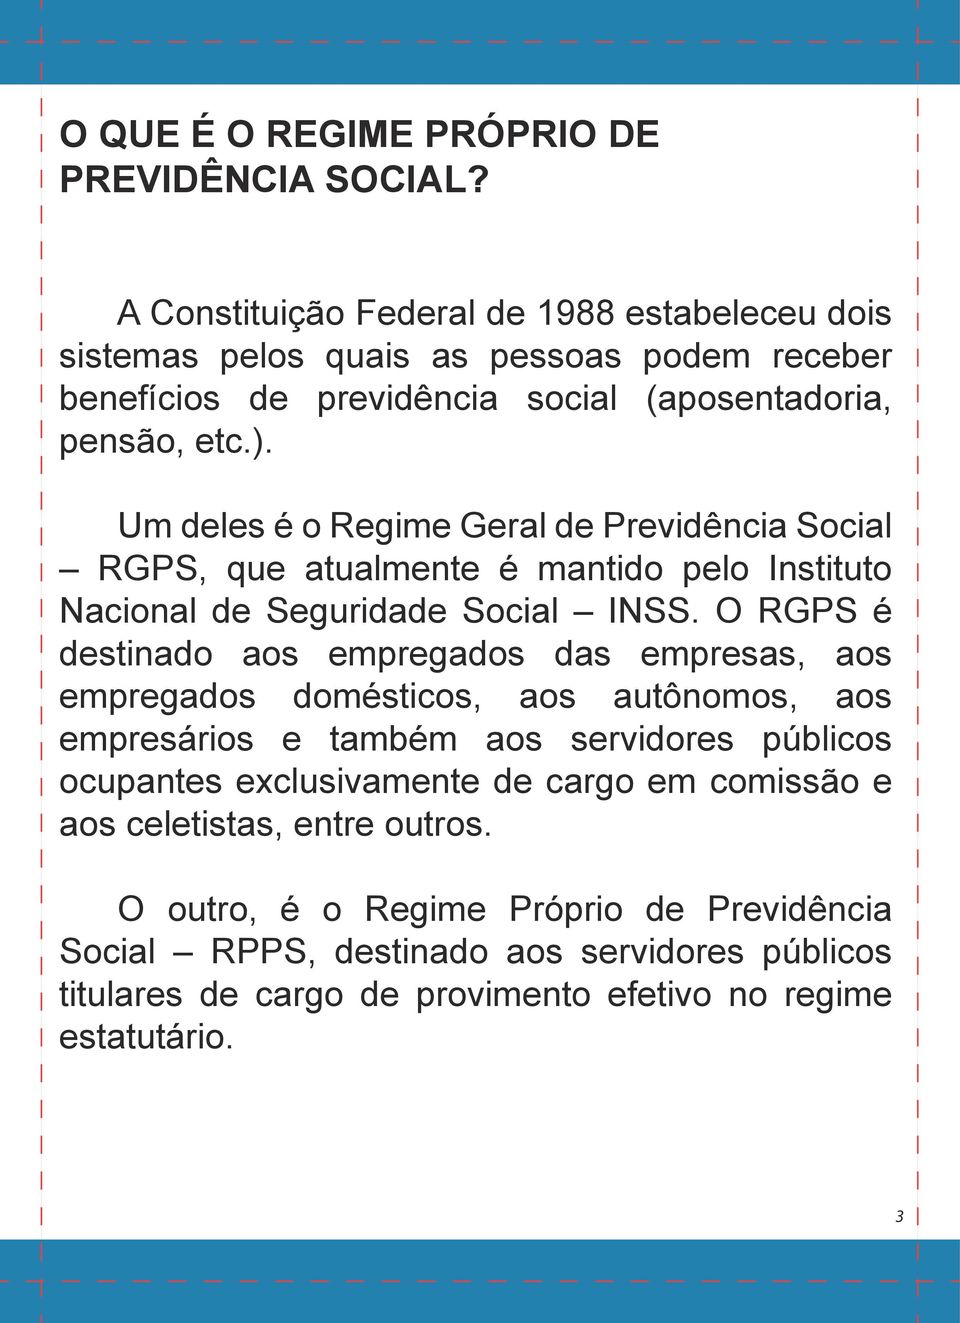 Um deles é o Regime Geral de Previdência Social RGPS, que atualmente é mantido pelo Instituto Nacional de Seguridade Social INSS.